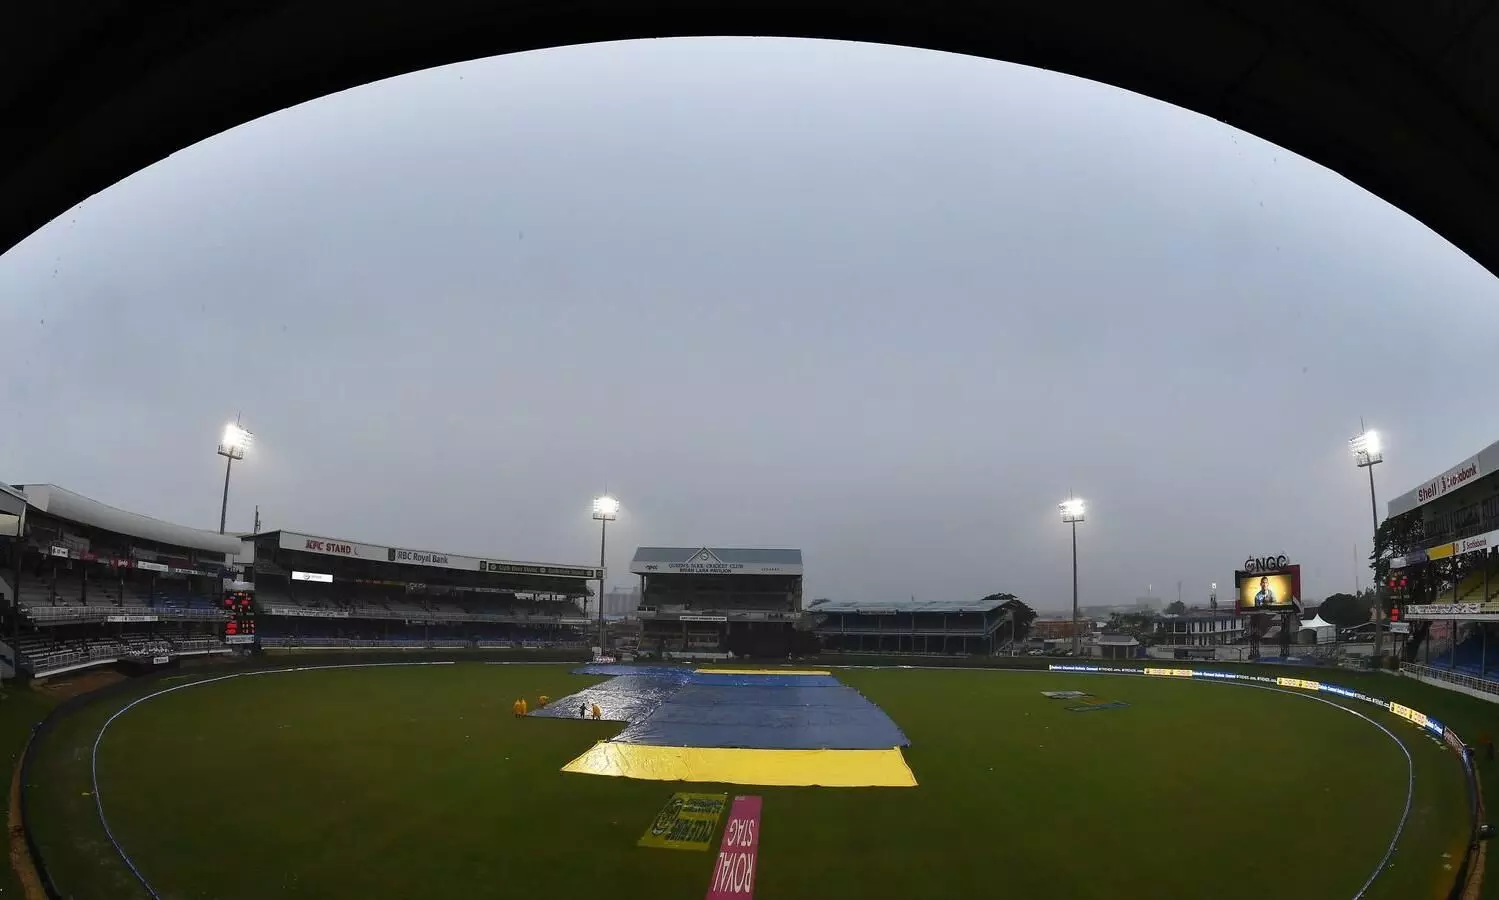 Rain: India takes training indoors ahead of ODI against Windies